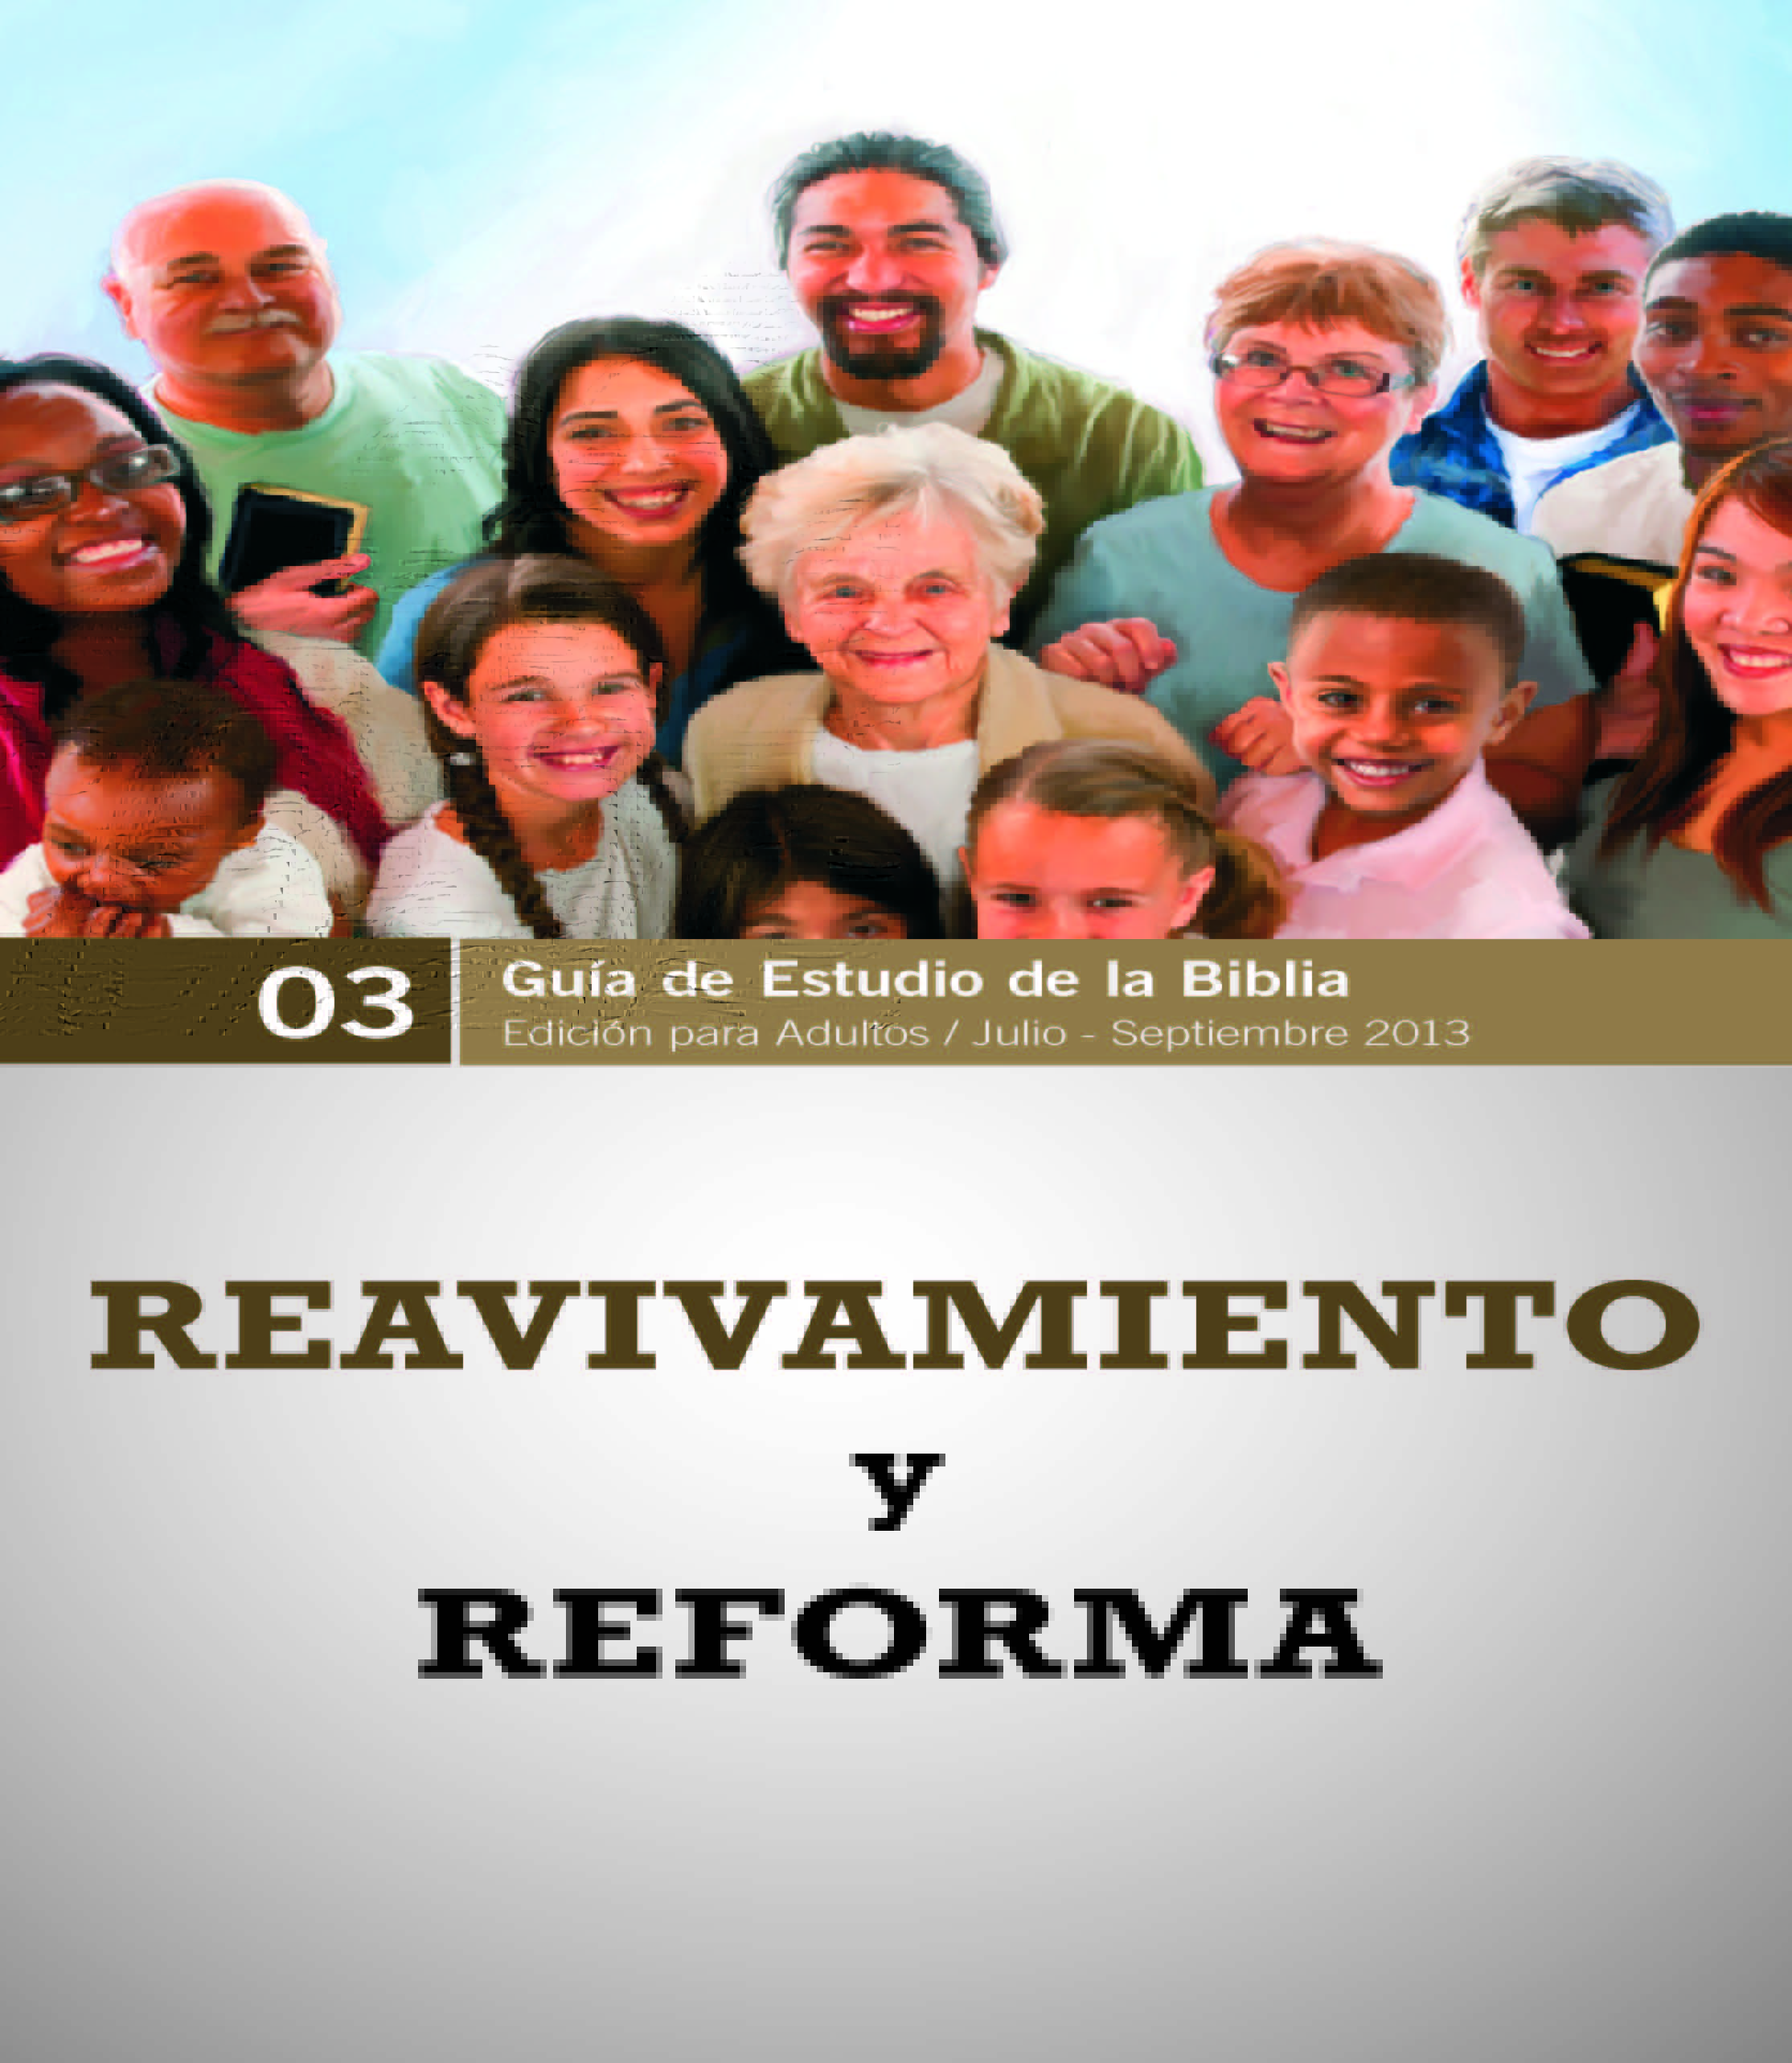 Videos y lección motivan estudio sobre reavivamiento y reforma espiritual